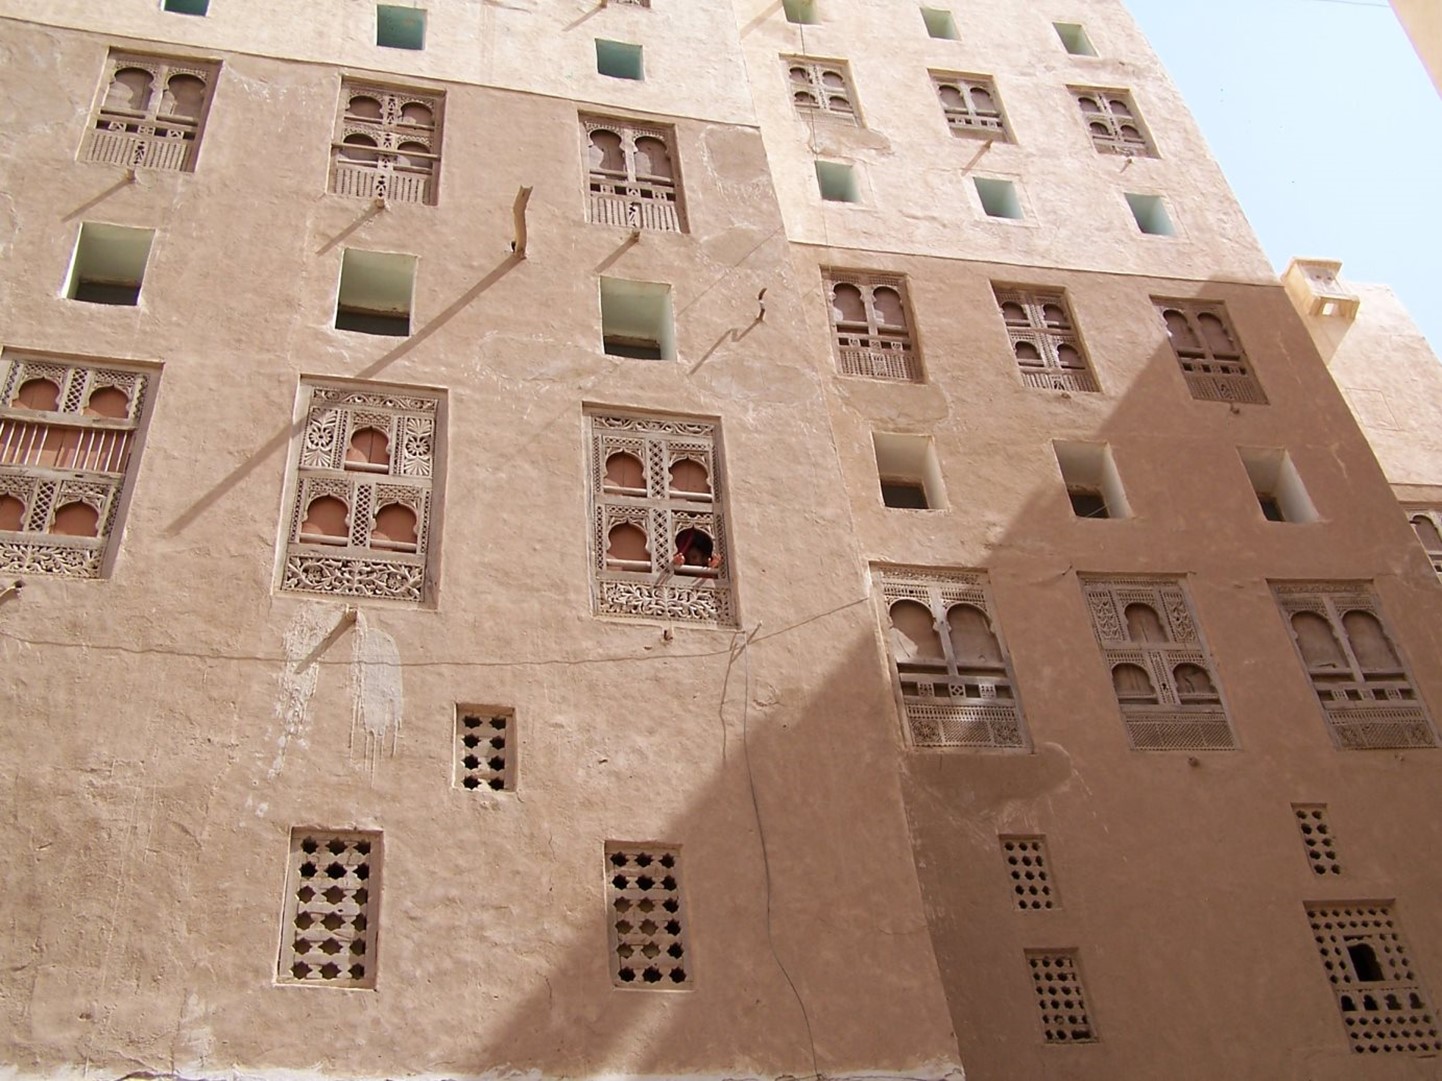 הארכיטקטורה המובהקת של גורדי השחקים בני ה -500 מוצגת בקיר עם חלונות תריסי עץ יפים